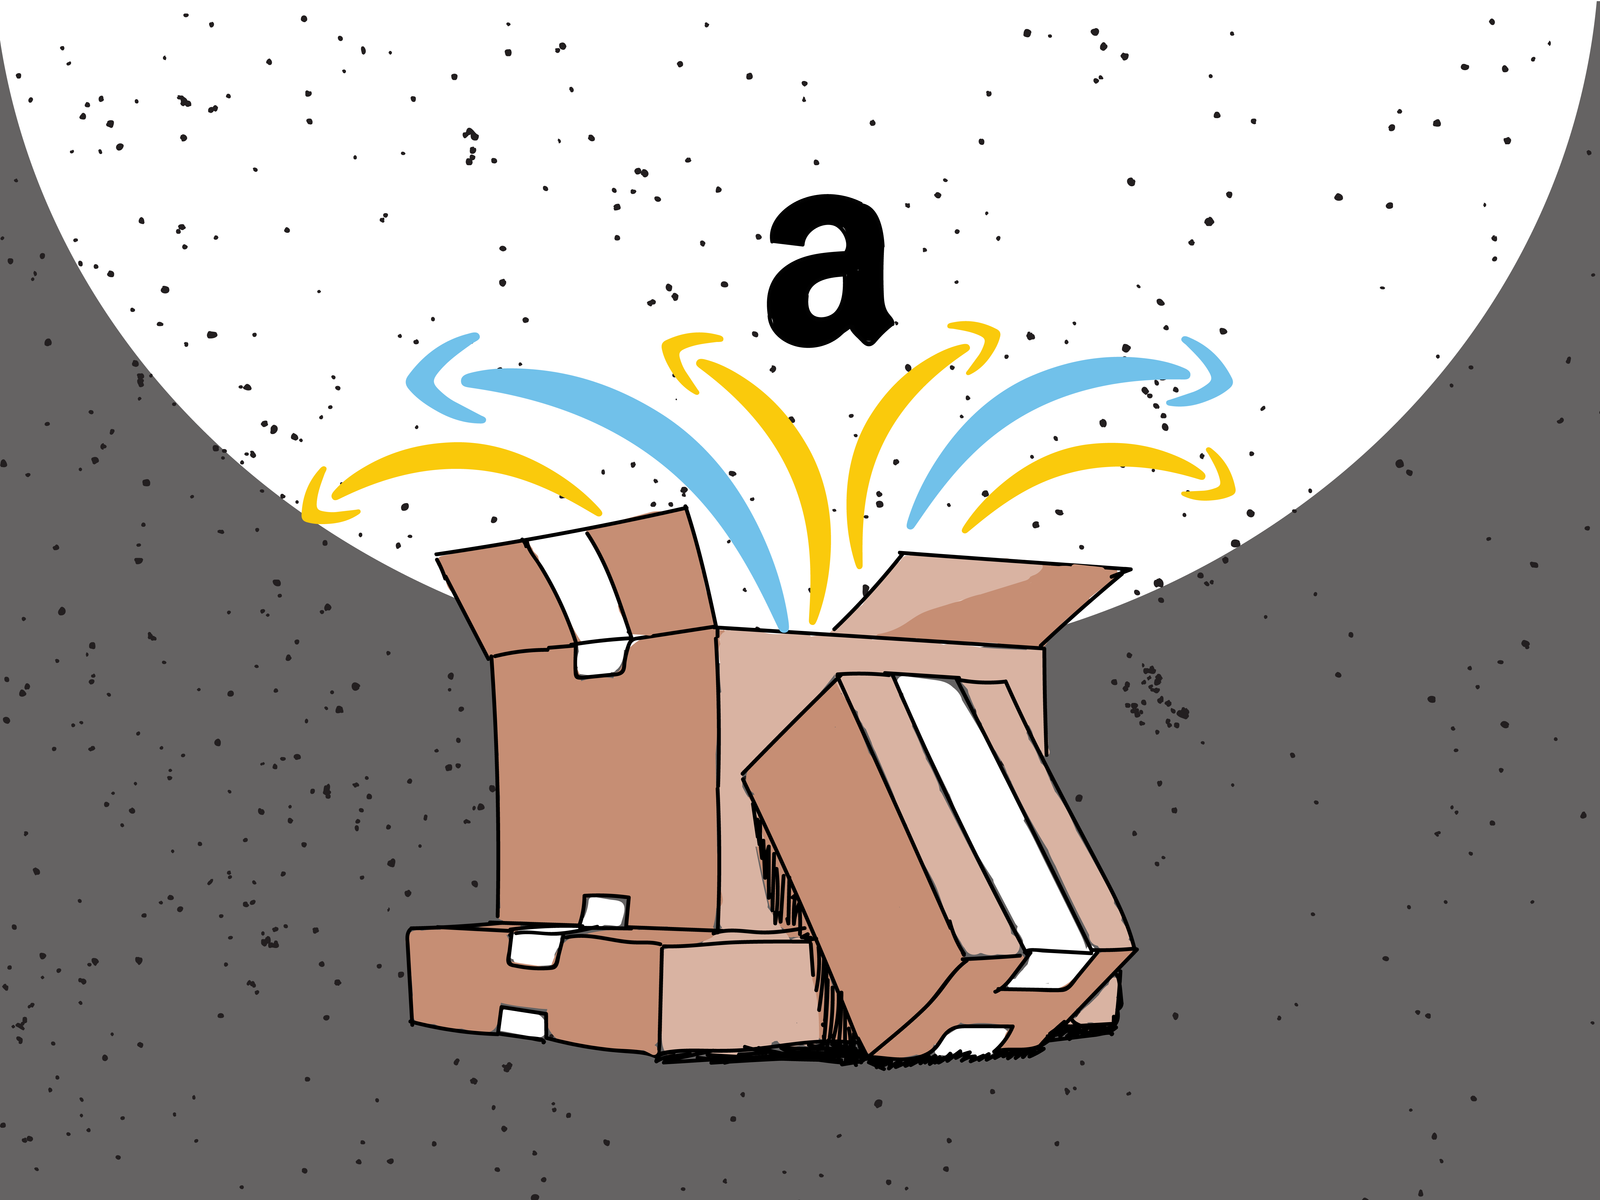 Amazon mudará política de devolução de e-books Kindle devido a abusos de tiktokers